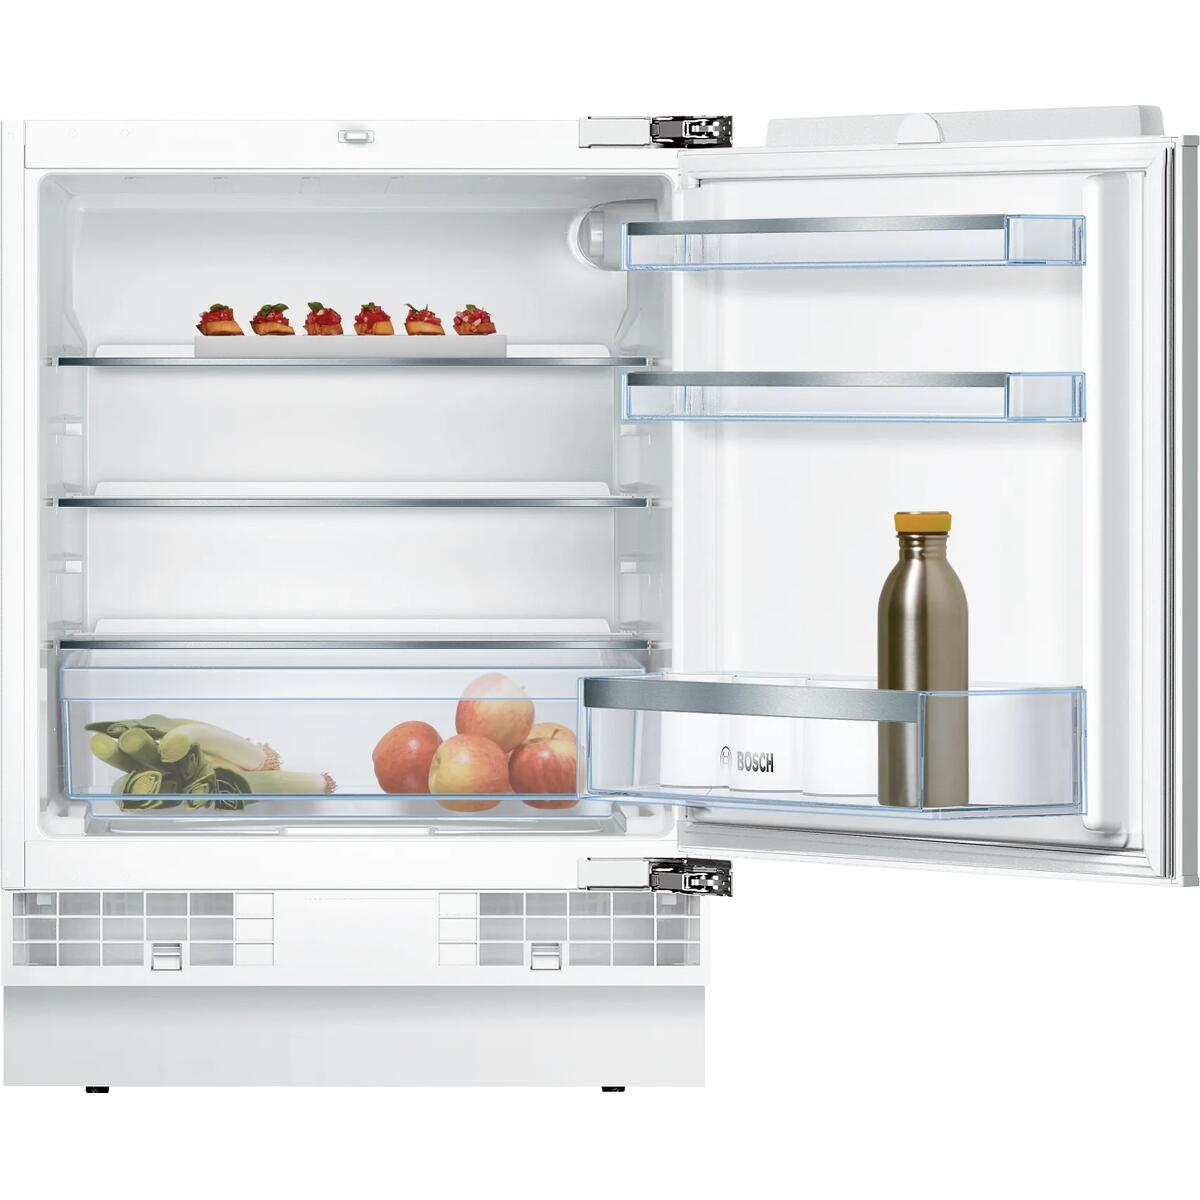 Kühlschrank - LED Beleuchtung wechseln - Anleitung @